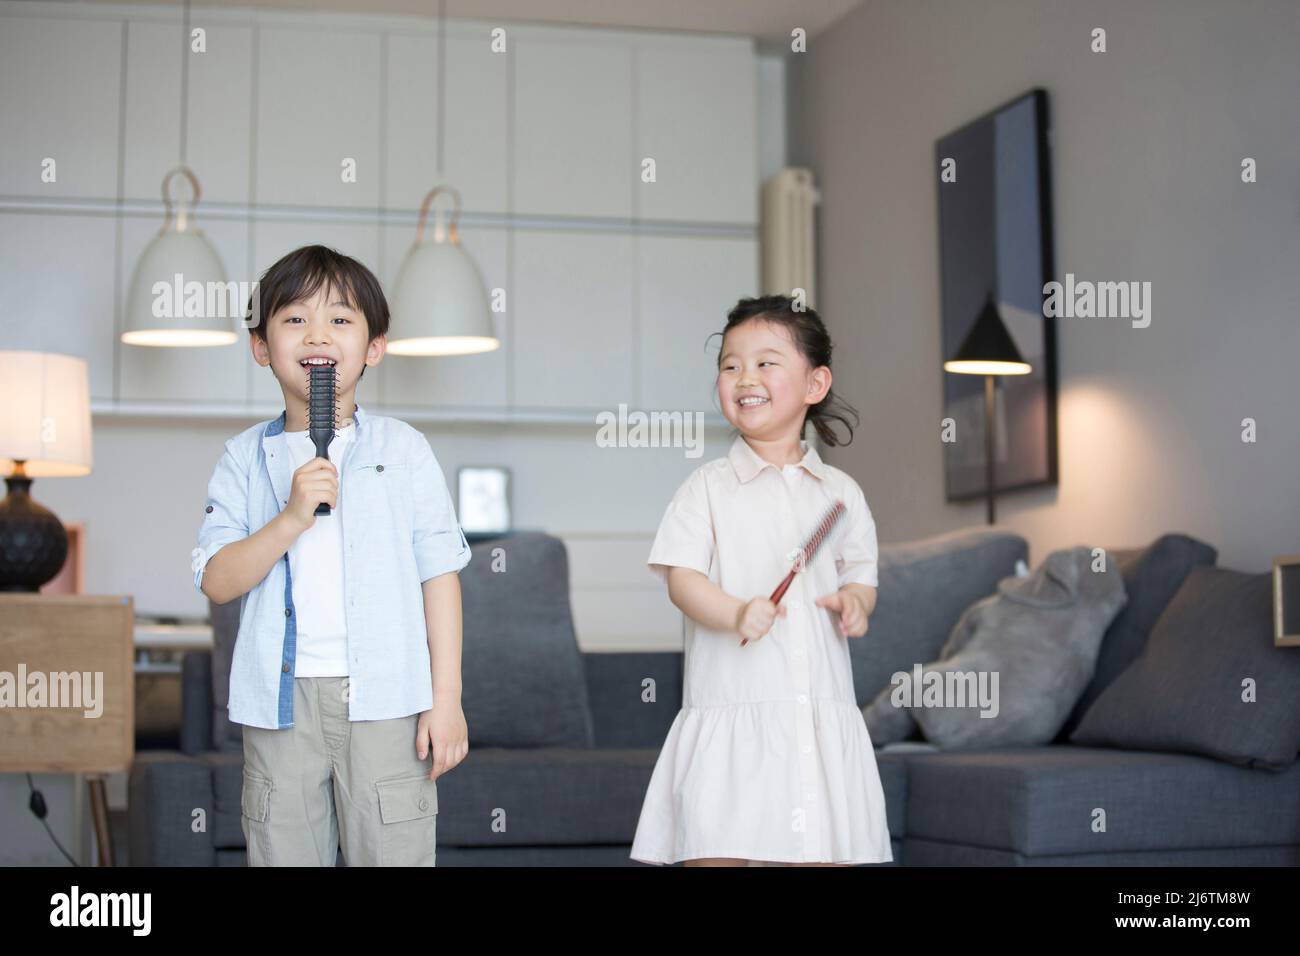 Une petite fille et un petit garçon chantant avec un peigne comme microphone dans le salon - photo de stock Banque D'Images